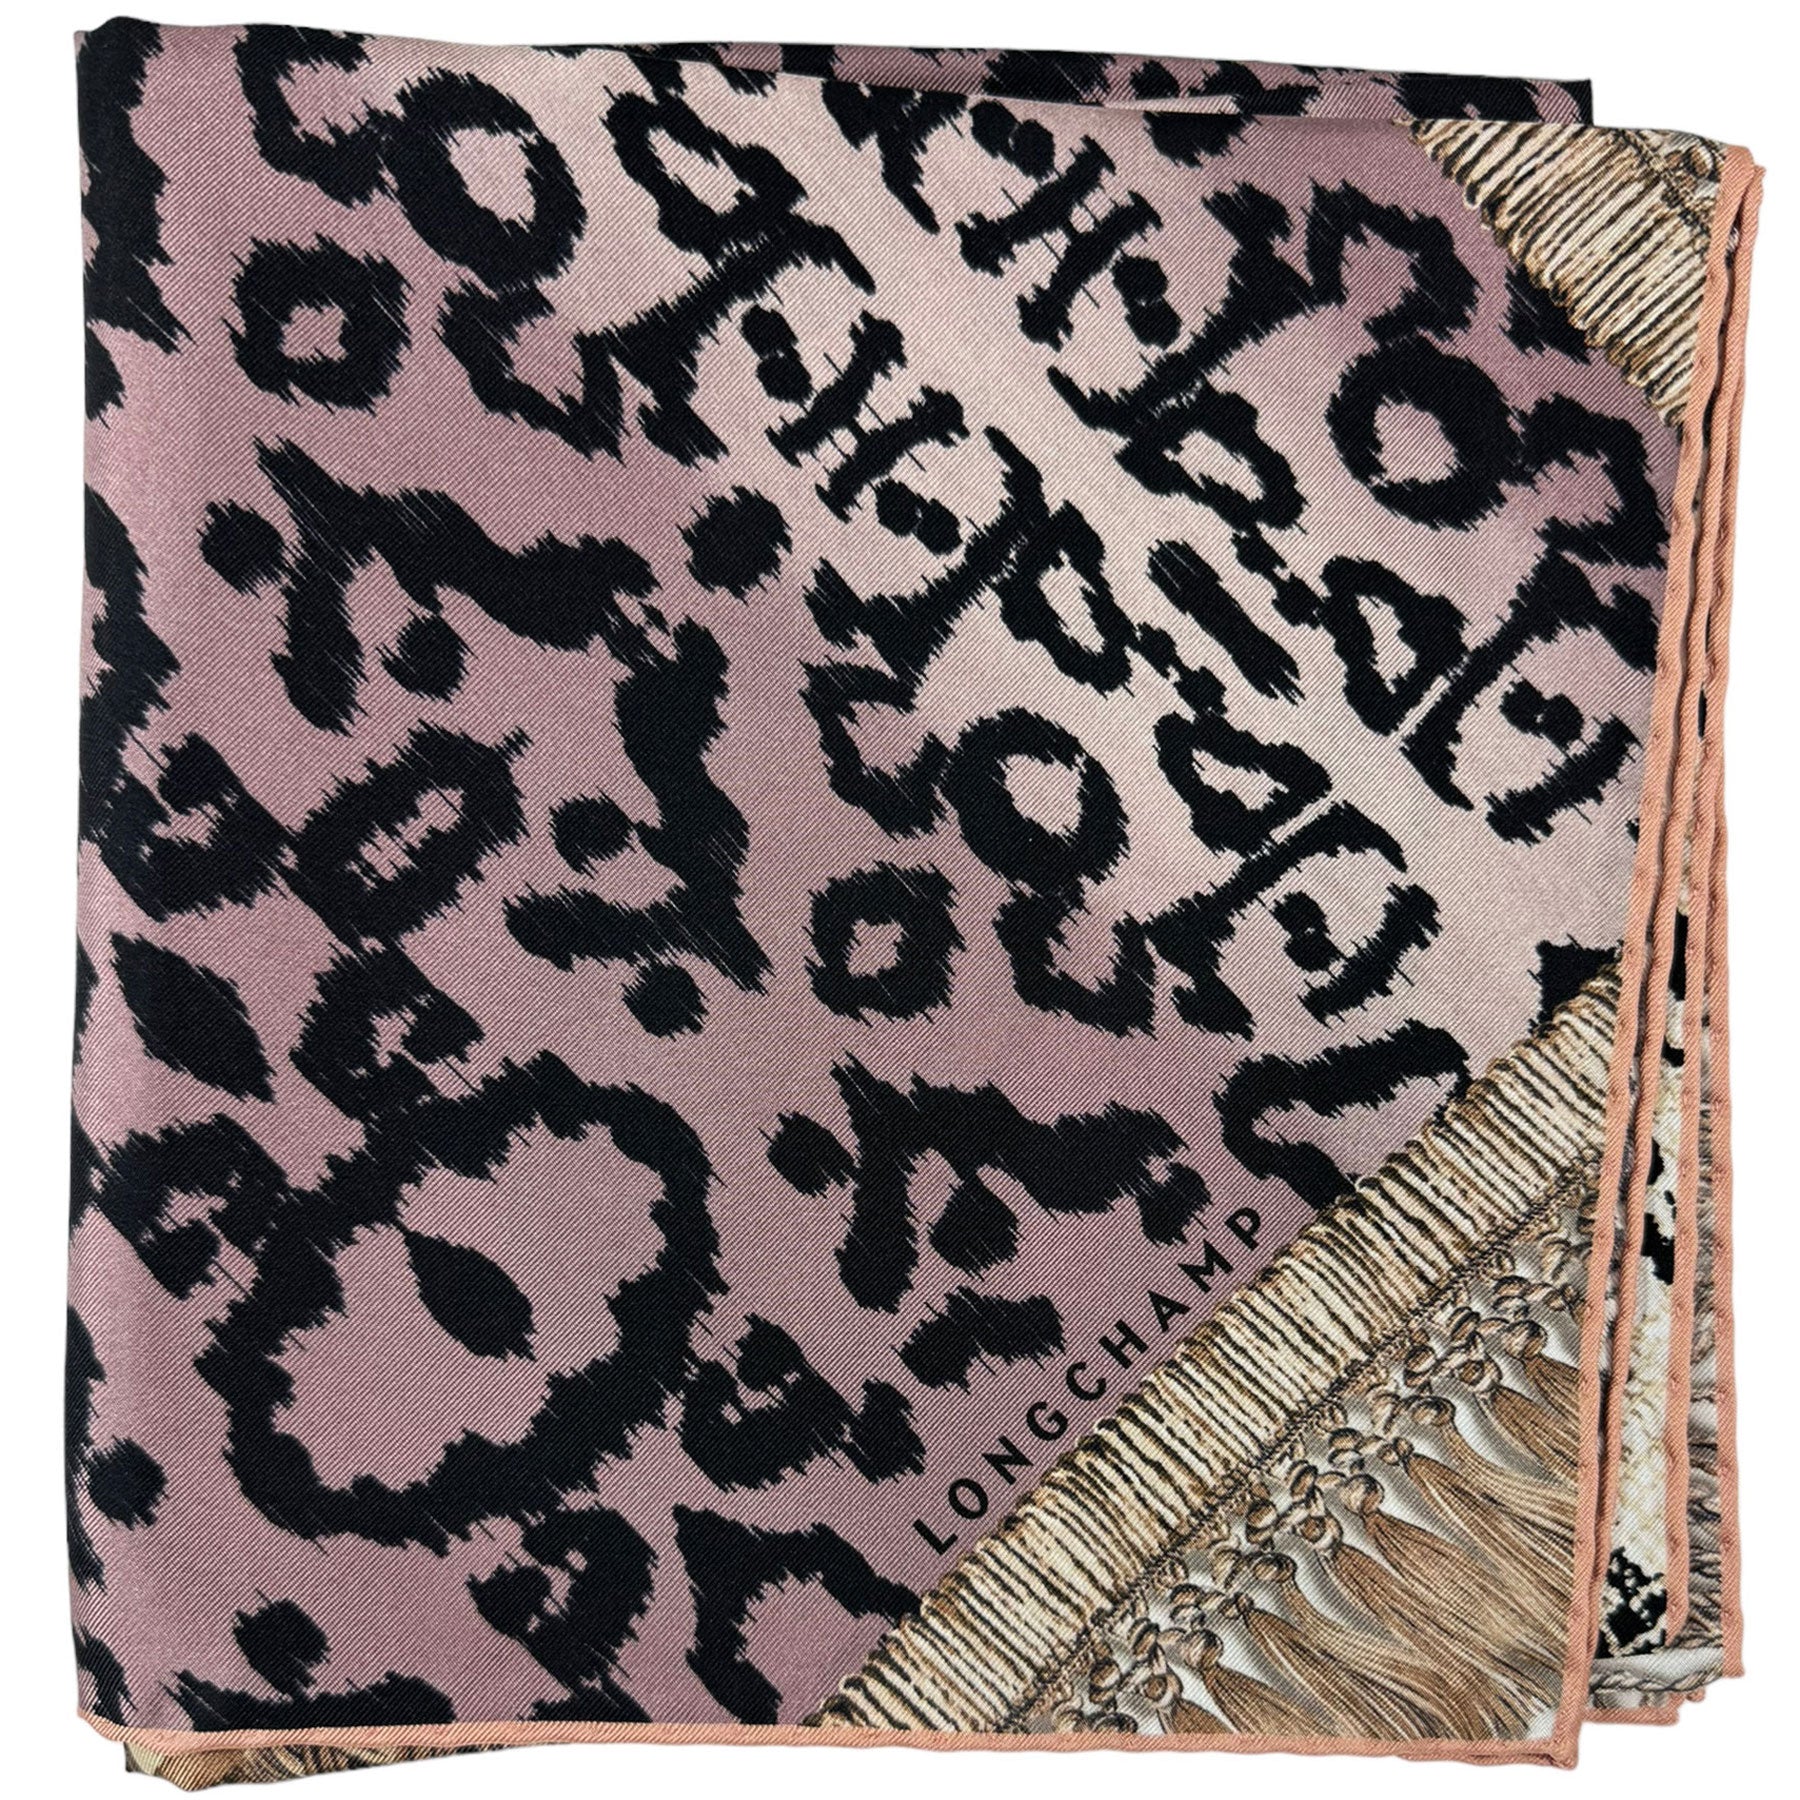 Longchamp Silk Scarf Pink Tan Design - Square Foulard